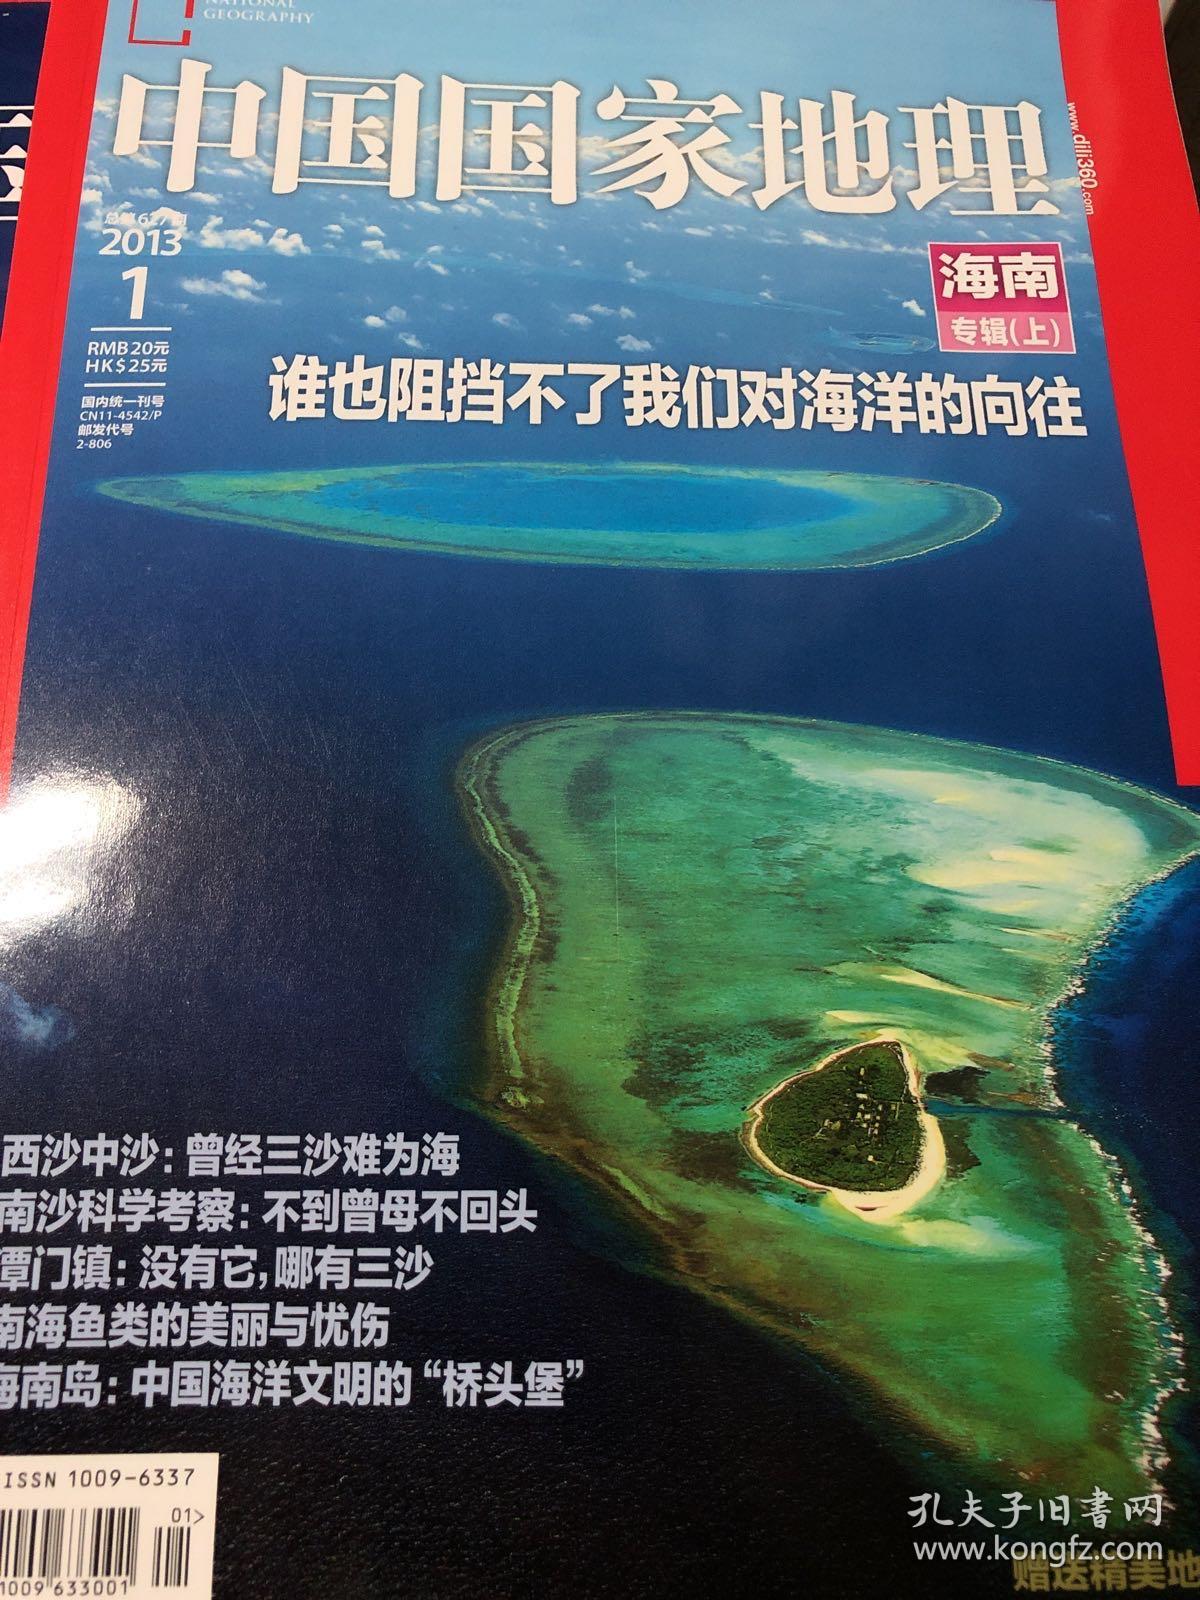 中国国家地理，2013年第一期第二期，海南专辑上下